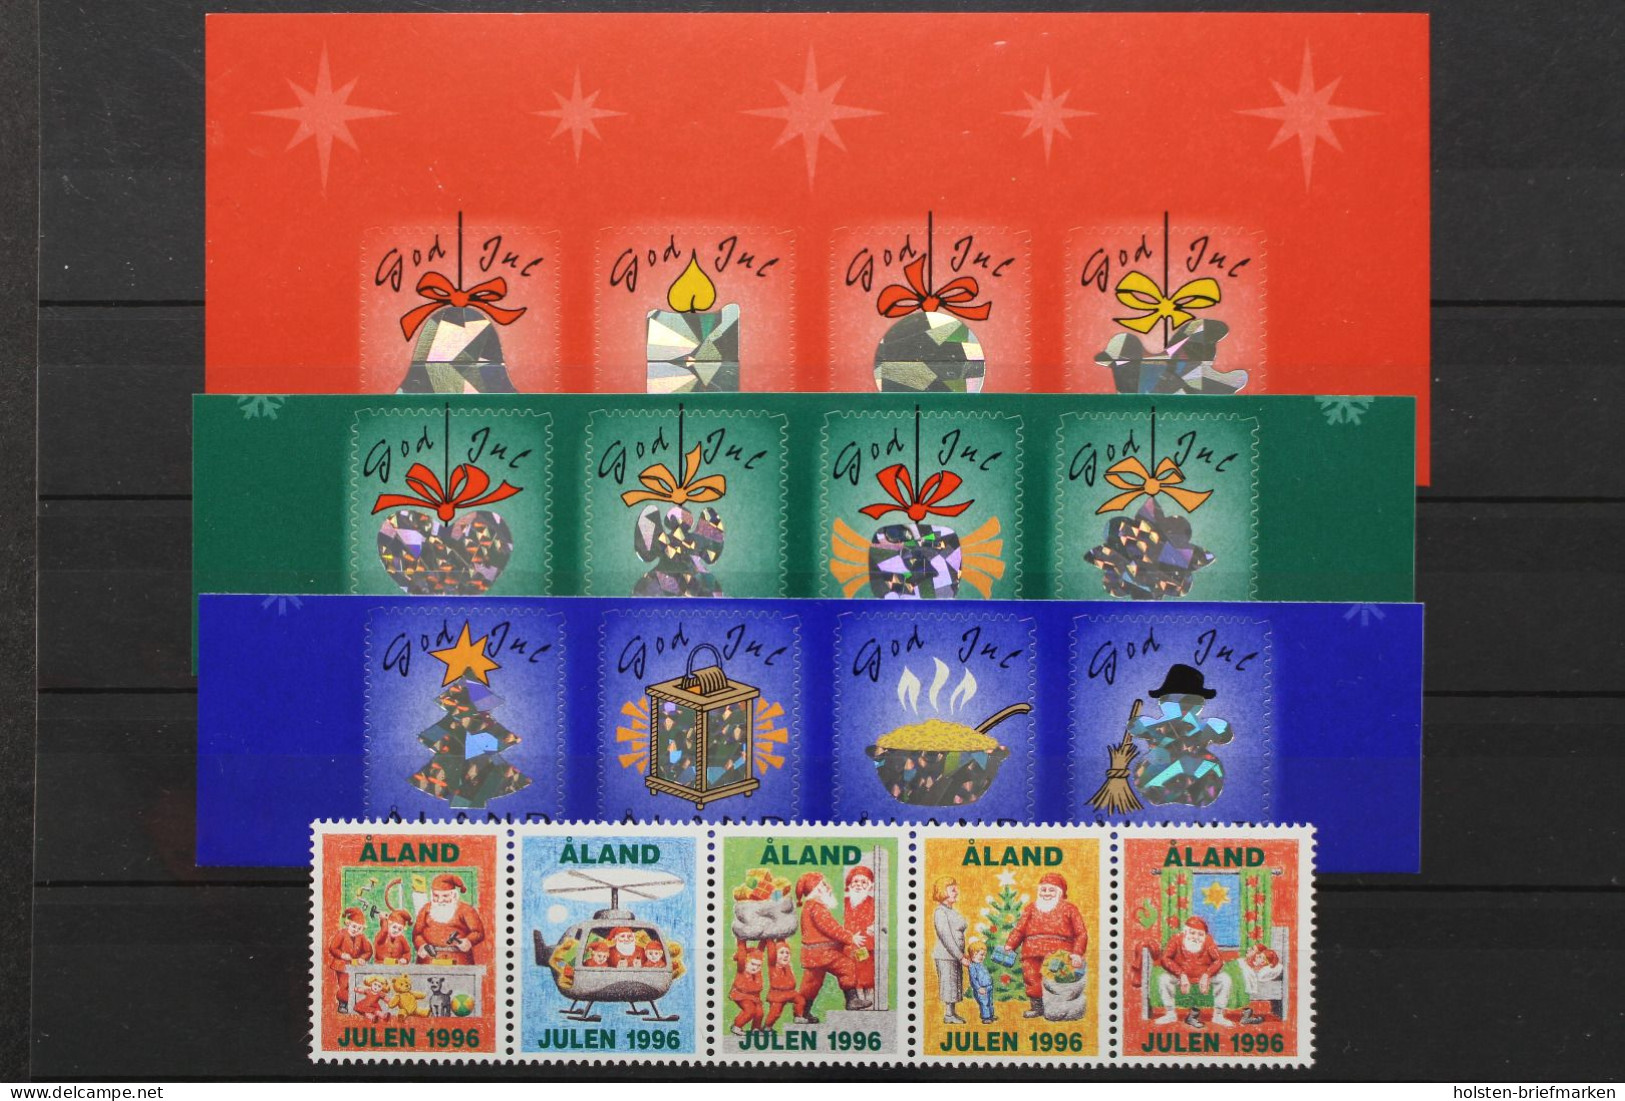 Aland, Jul - Weihnachtsmarken, Viererstreifen, Postfrisch / MNH - Aland